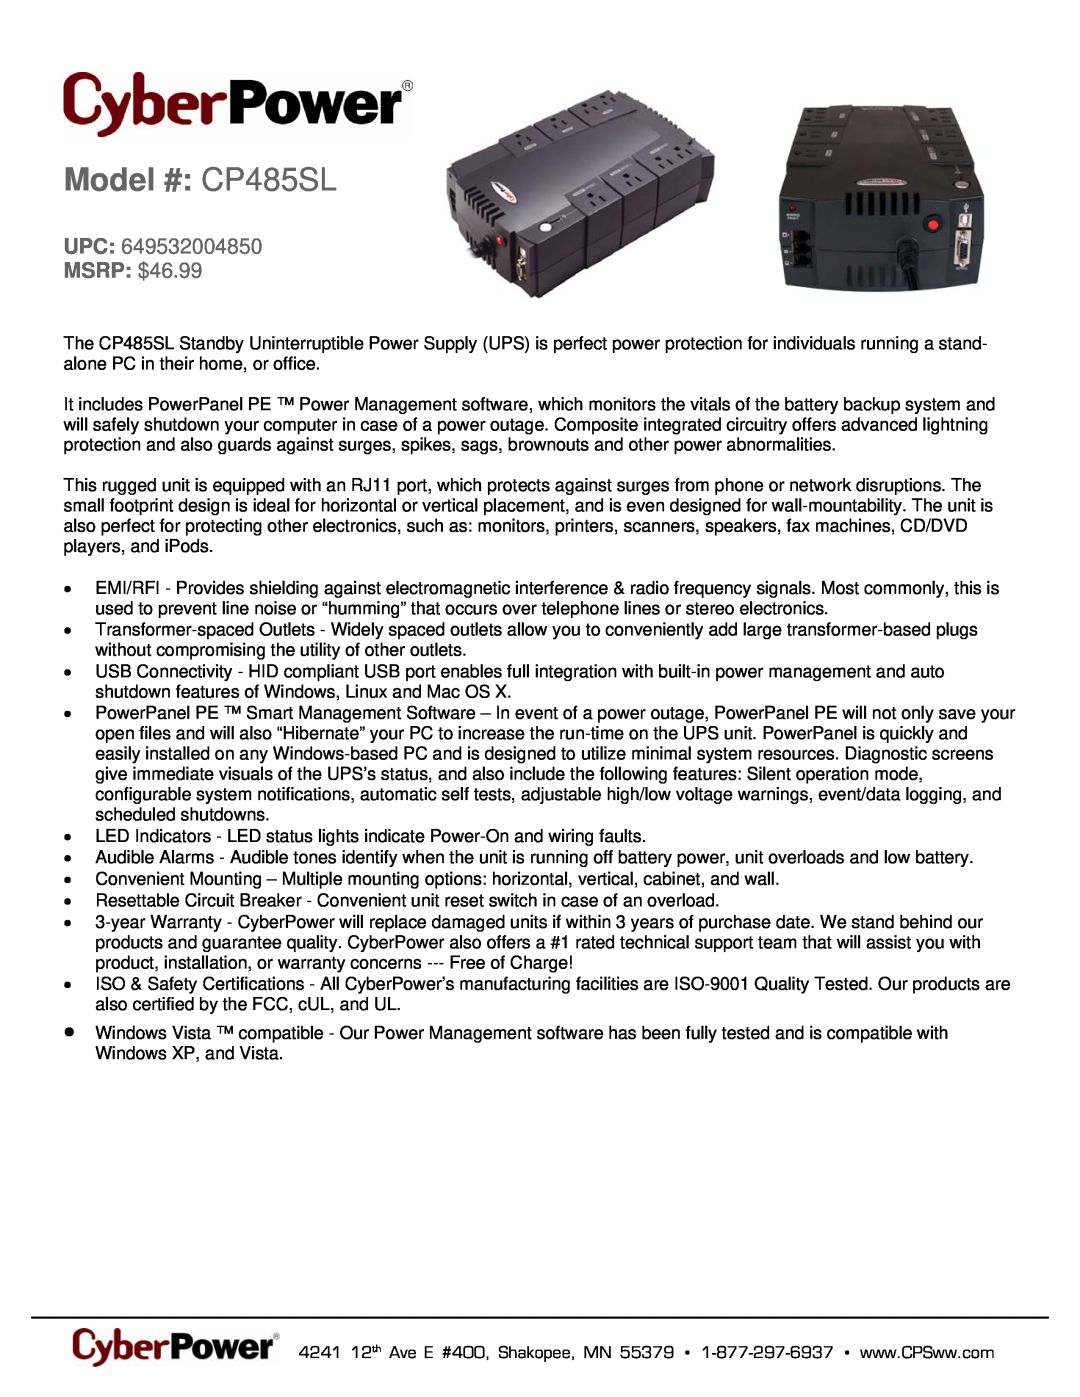 CyberPower Systems 649532004850 warranty Model # CP485SL, MSRP $46.99 